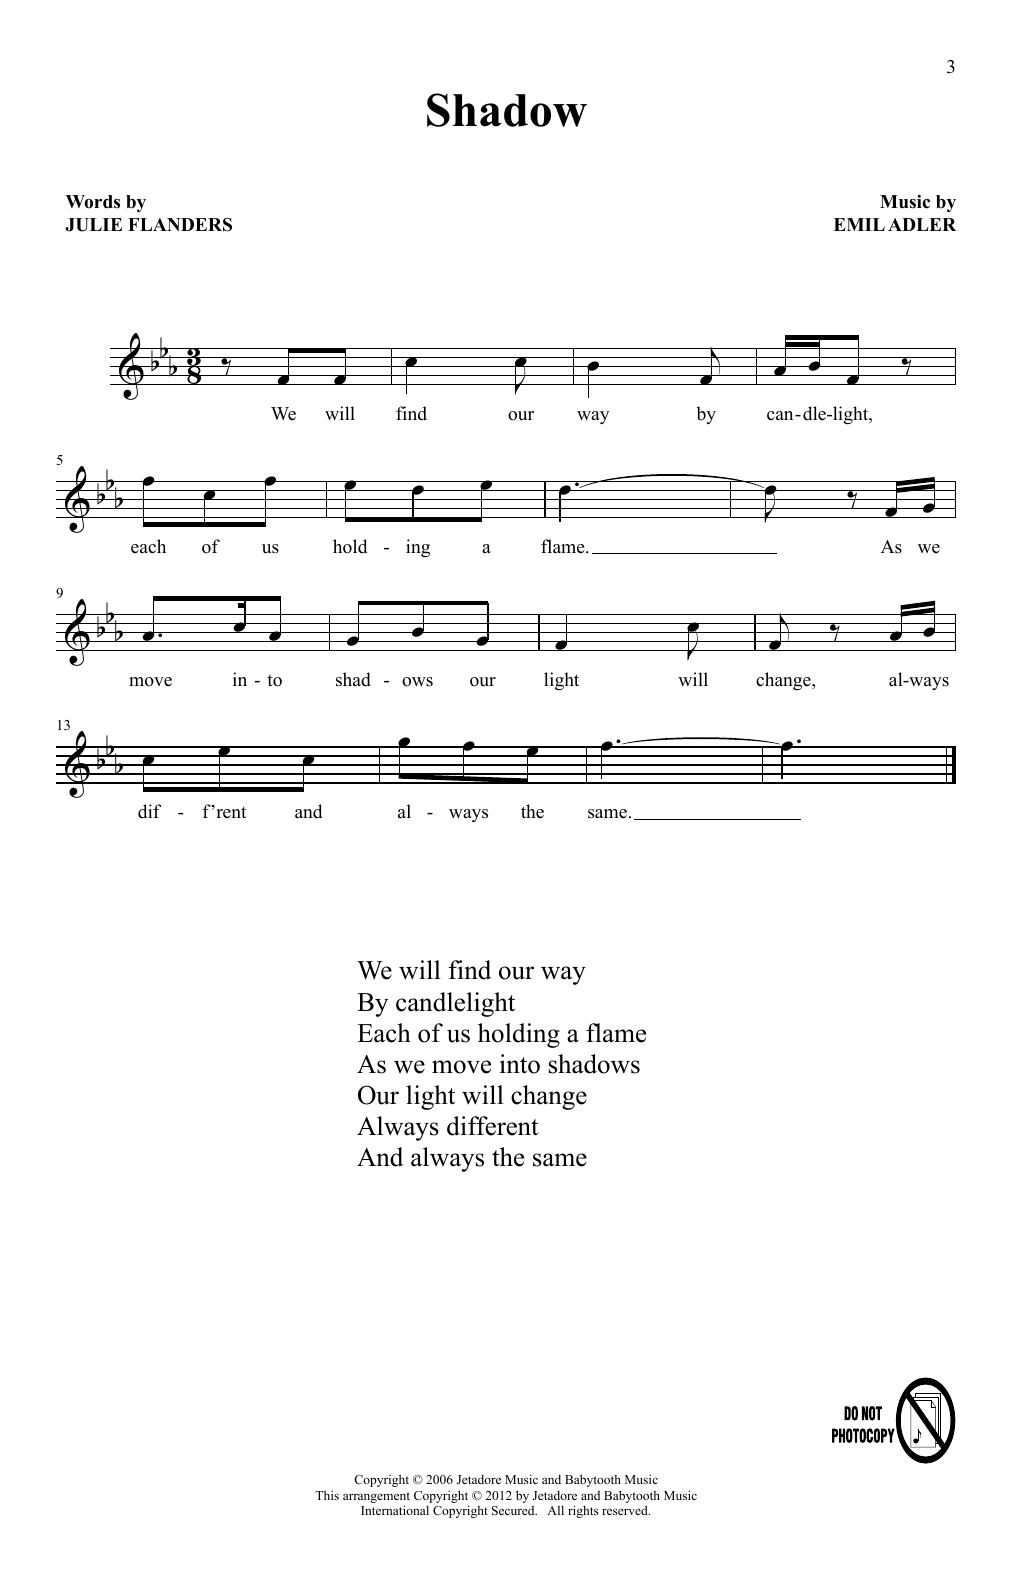 Julie Flanders & Emil Adler Found (arr. Keiji Ishiguri) Sheet Music Notes & Chords for Choir - Download or Print PDF